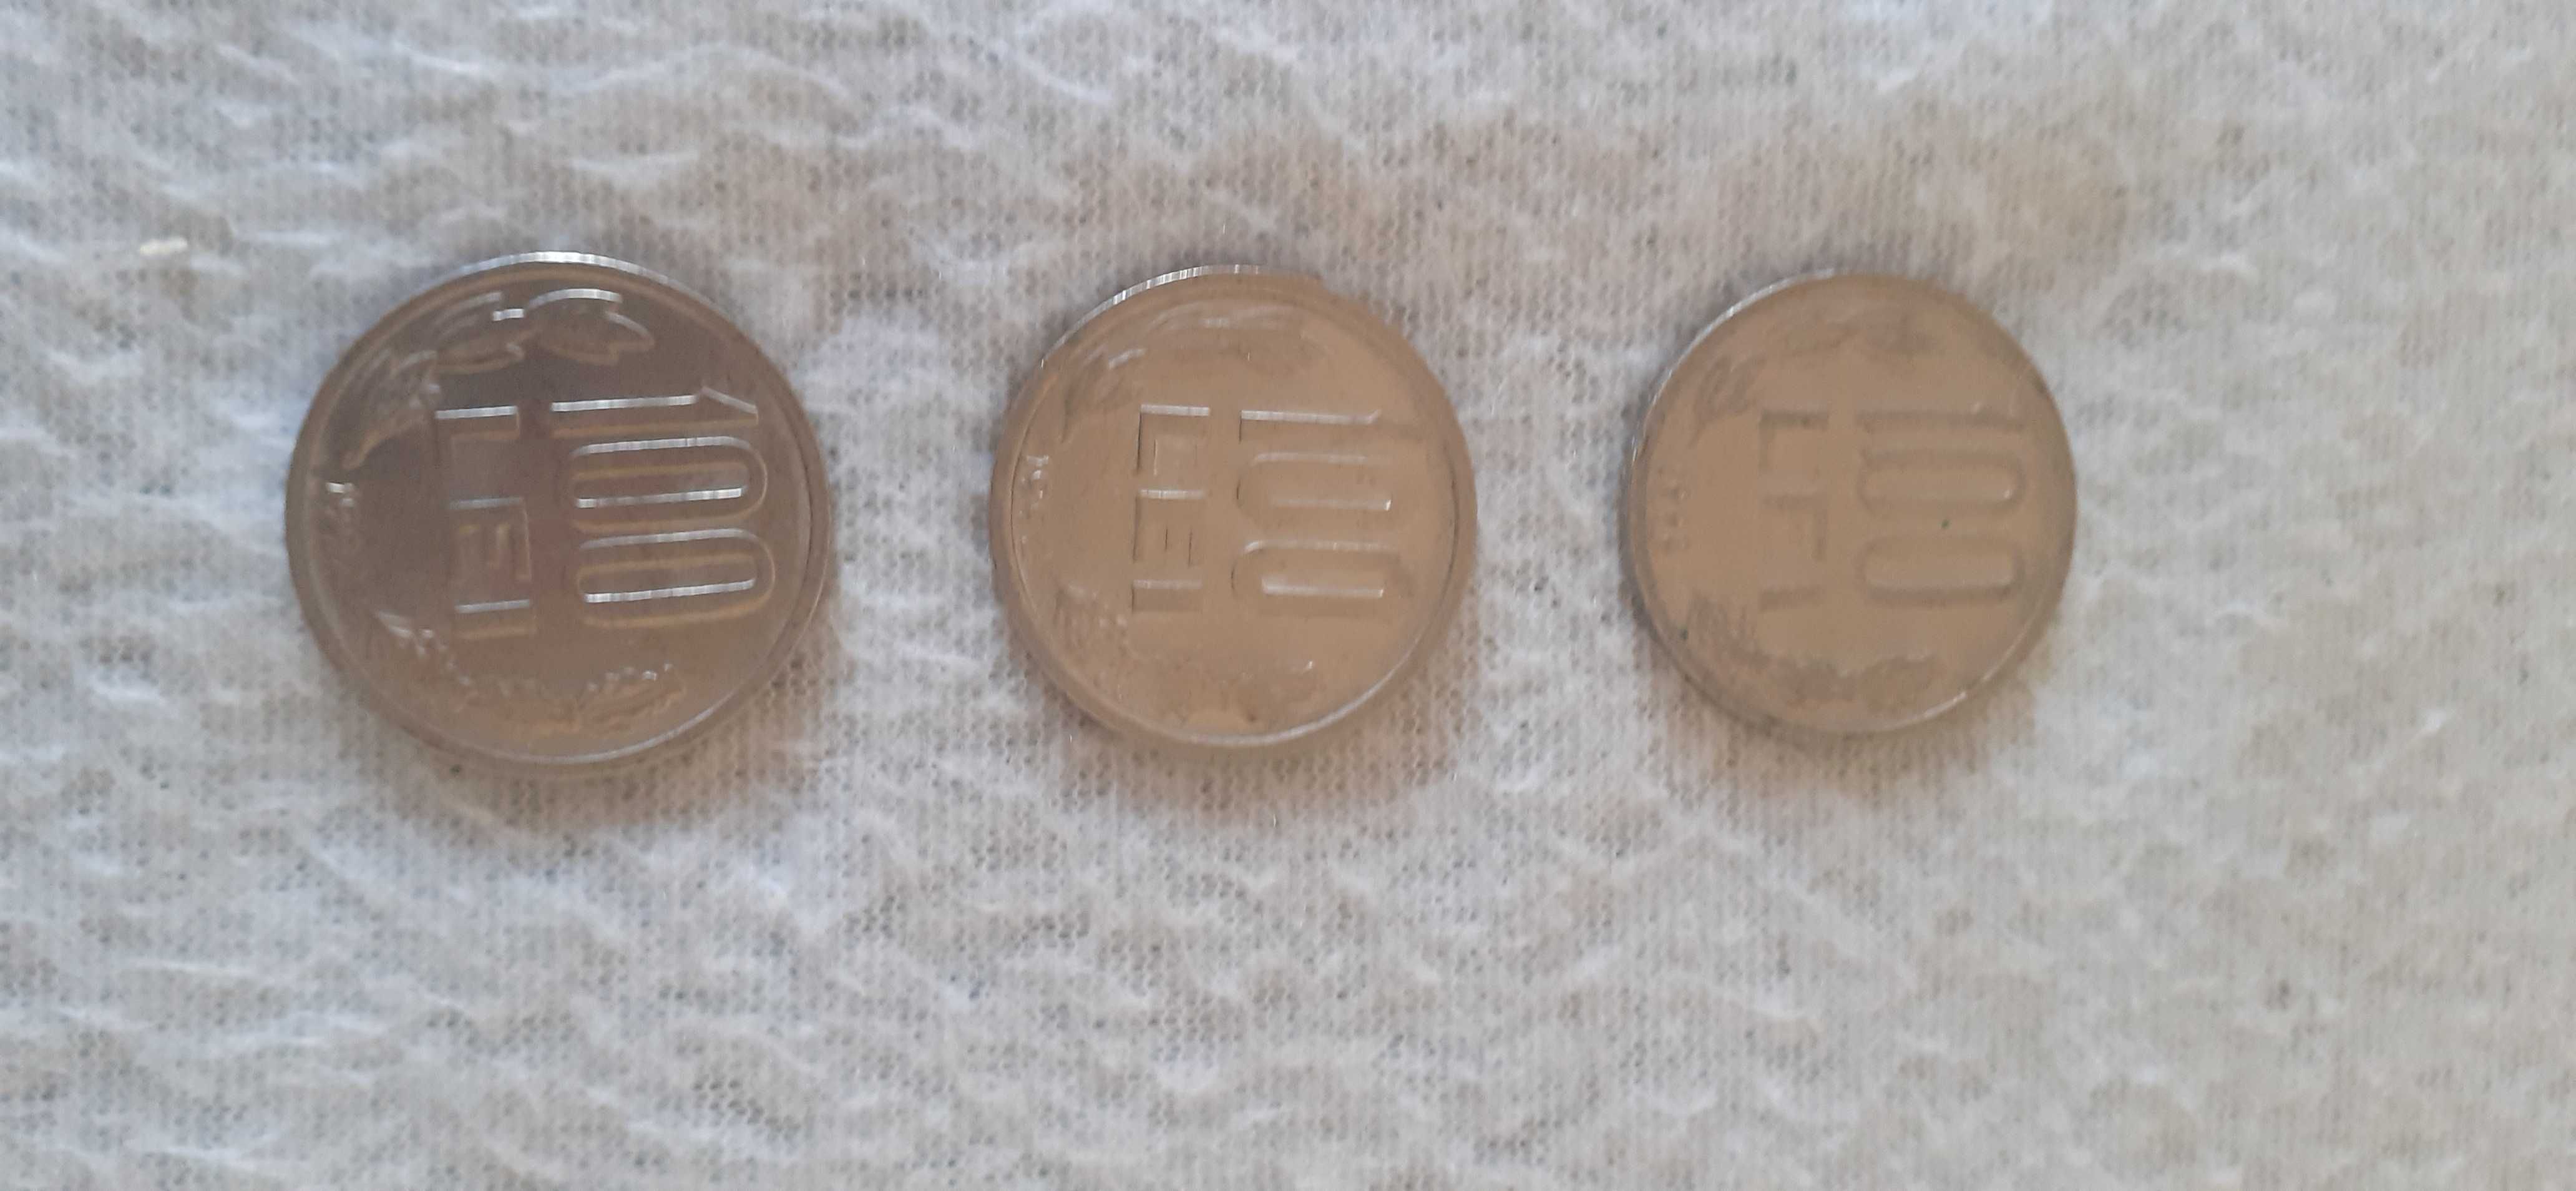 10 monezi/monede/moneda 100 lei Mihai Viteazul 92 , 93 , 94